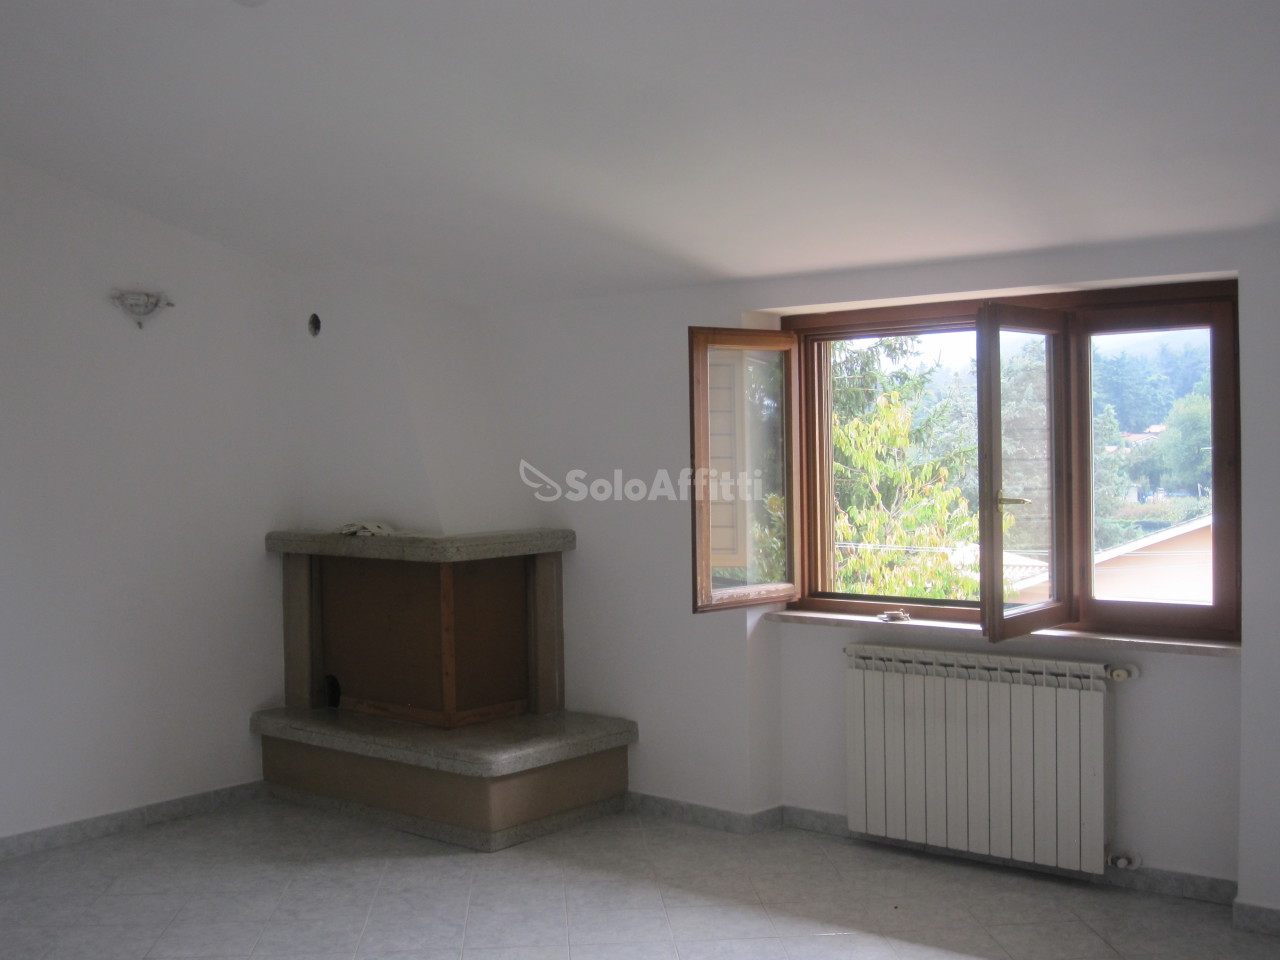 Appartamento in affitto a Rocca Priora, 2 locali, prezzo € 590 | PortaleAgenzieImmobiliari.it